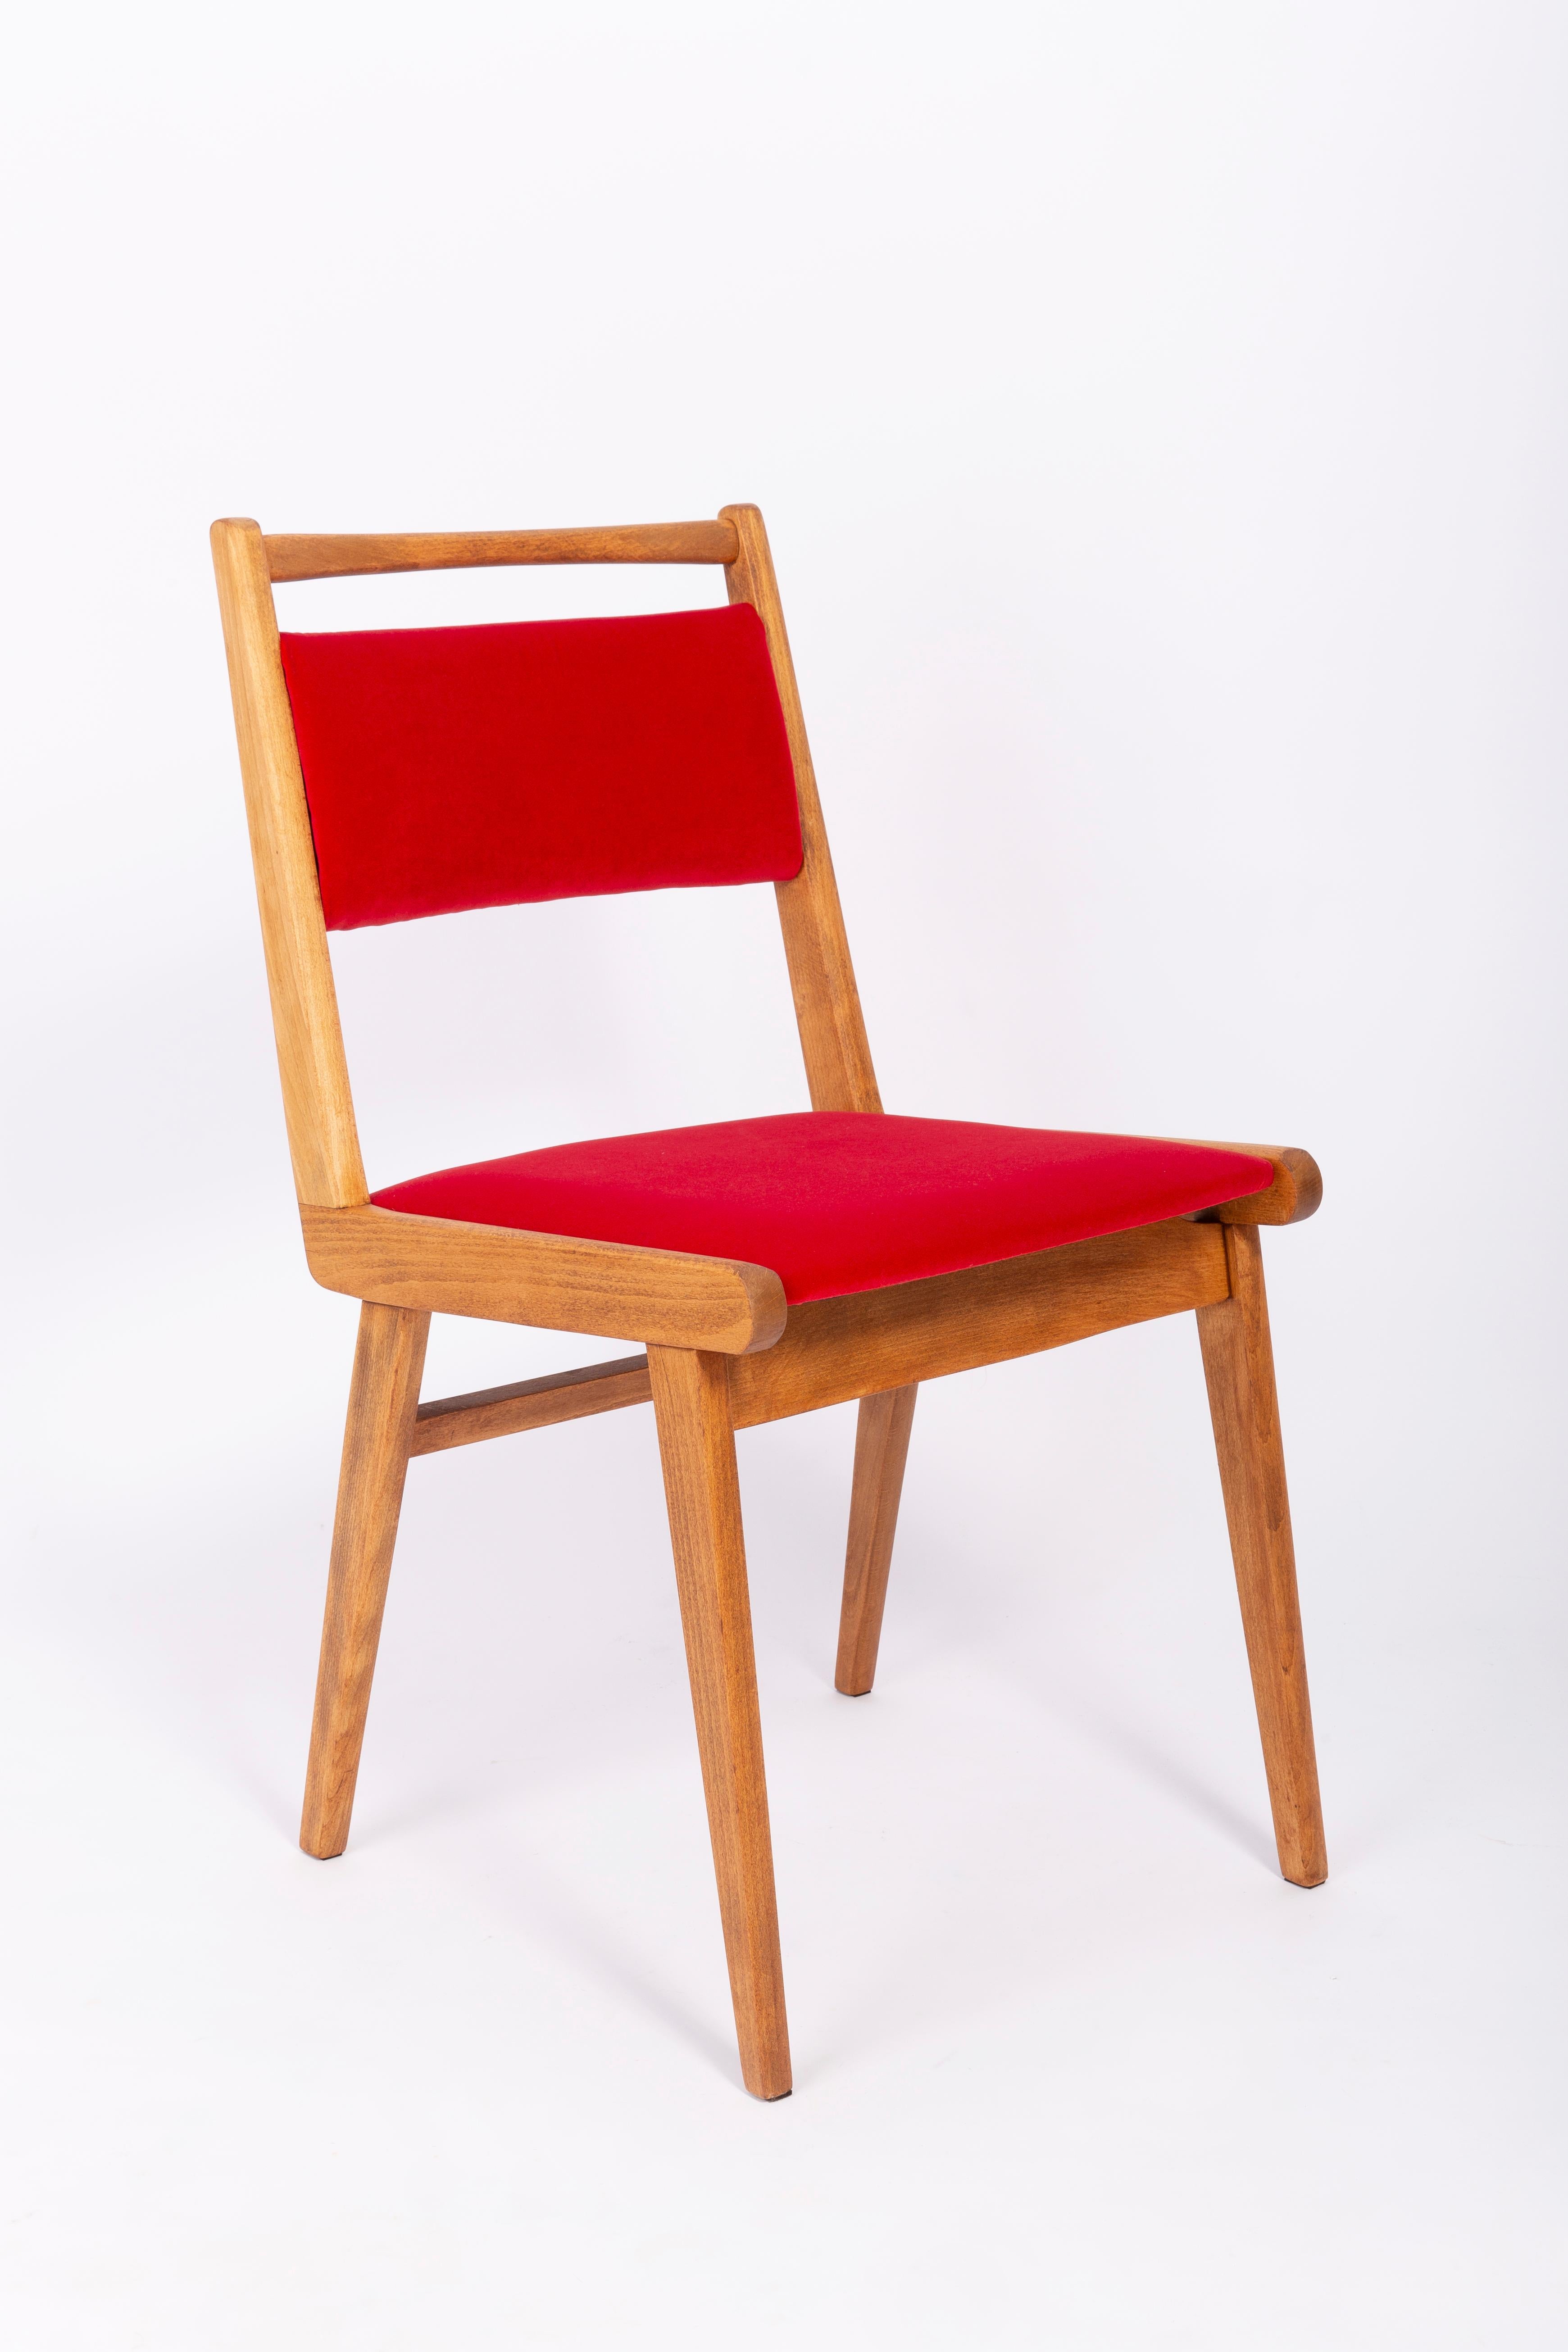 Chaises conçues par le professeur Rajmund Halas. Il s'agit d'un modèle de type Jar. Fabriqué en bois de hêtre. Les chaises ont été entièrement rénovées et les boiseries ont été rafraîchies. L'assise et le dossier sont habillés d'un tissu en velours